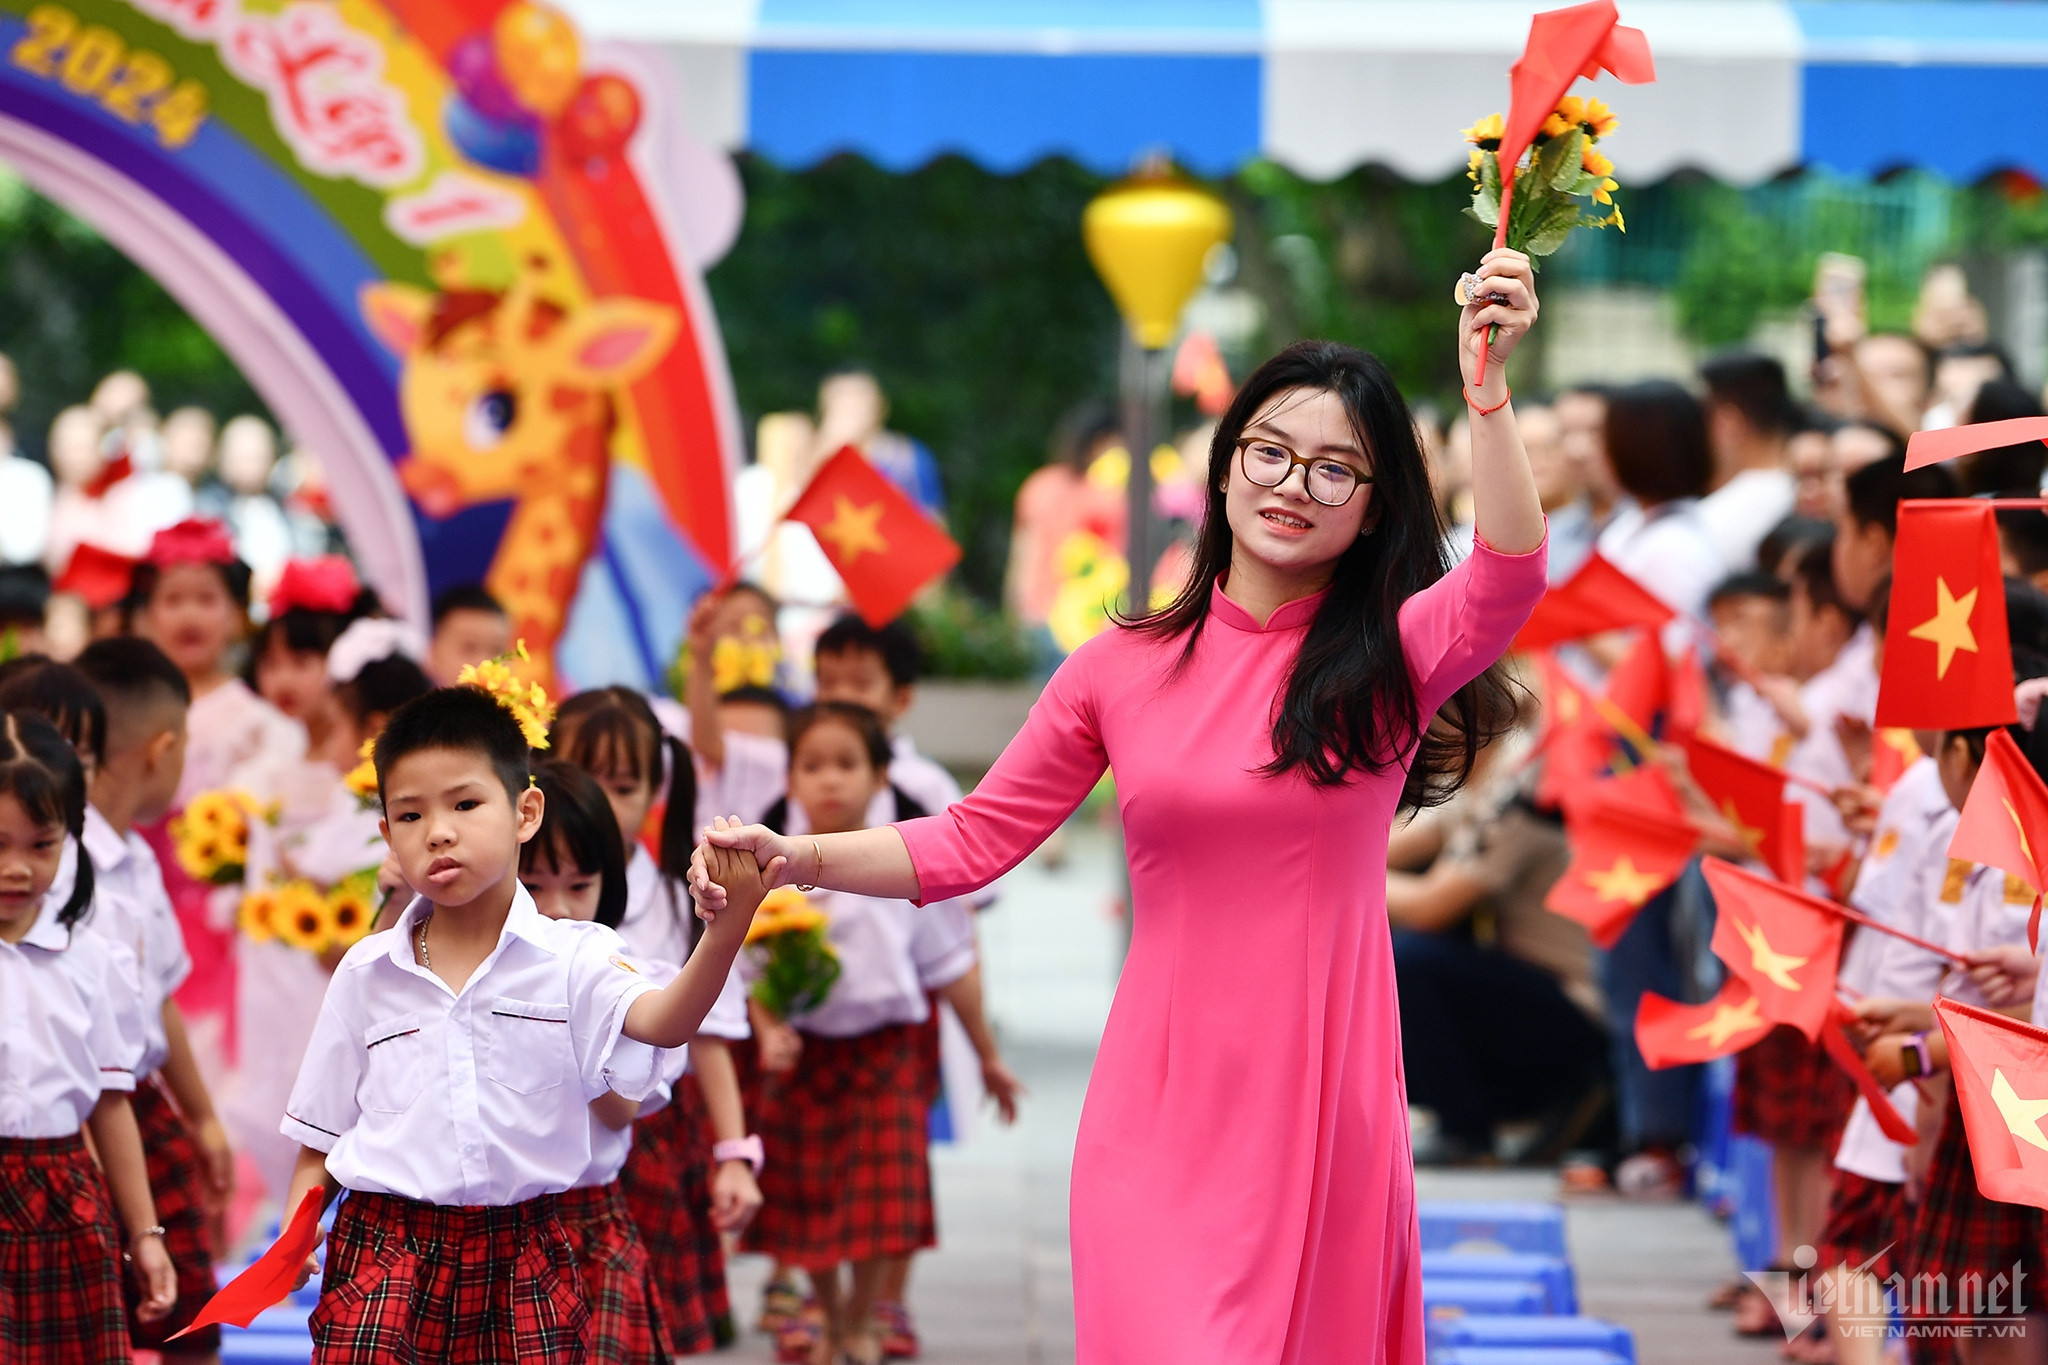 Vì sao 20/11 được chọn là Ngày Nhà giáo Việt Nam?